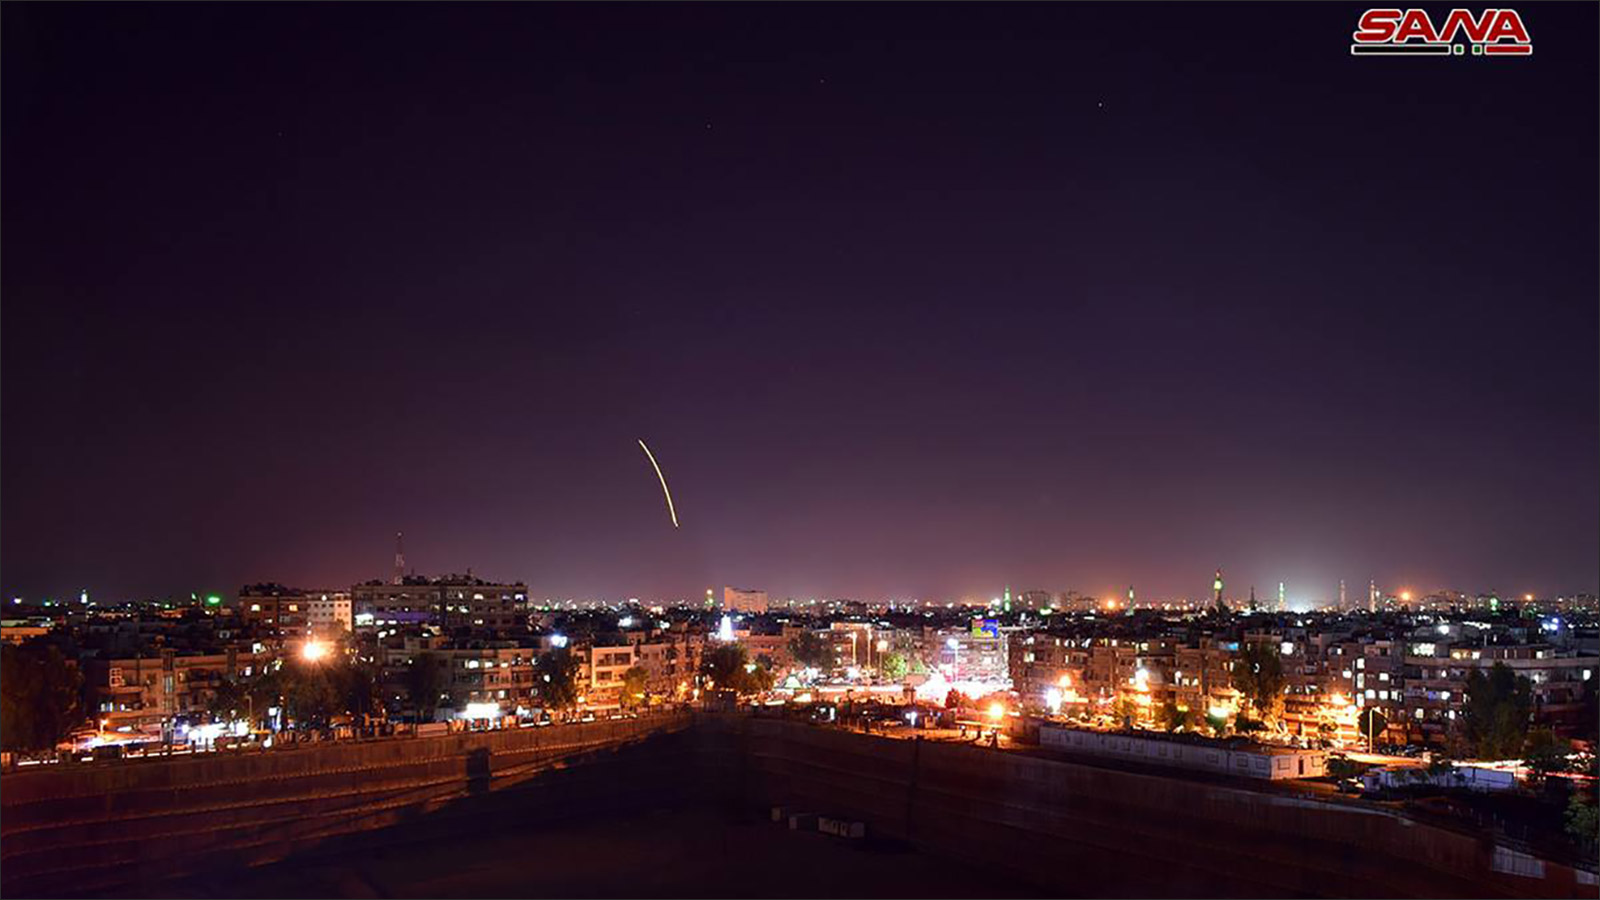 ‪صورة نشرتها وكالة سانا لما قالت إنه تصدي الجيش السوري لصواريخ إسرائيلية استهدفت مطار دمشق الدولي‬ (مواقع التواصل الاجتماعي)